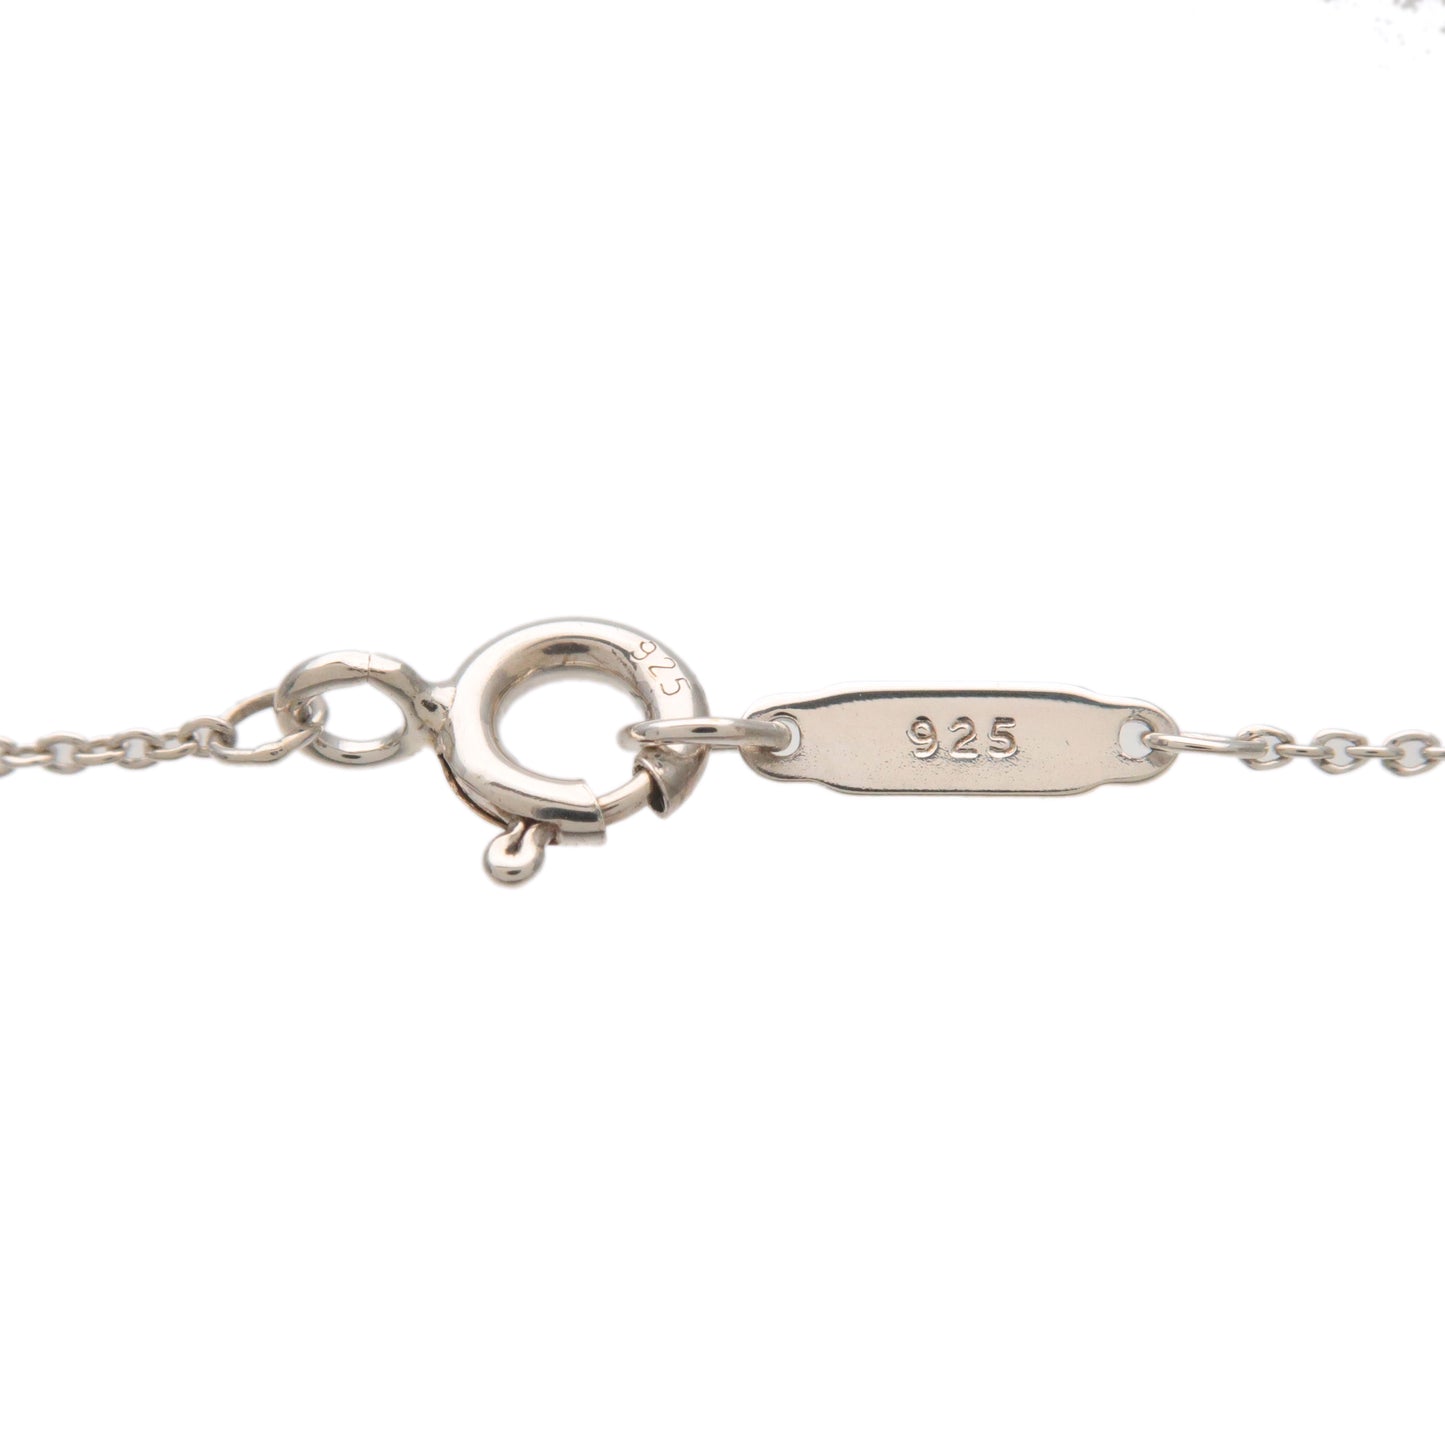 Tiffany&Co. Return to Tiffany Mini Double Heart Necklace SV925